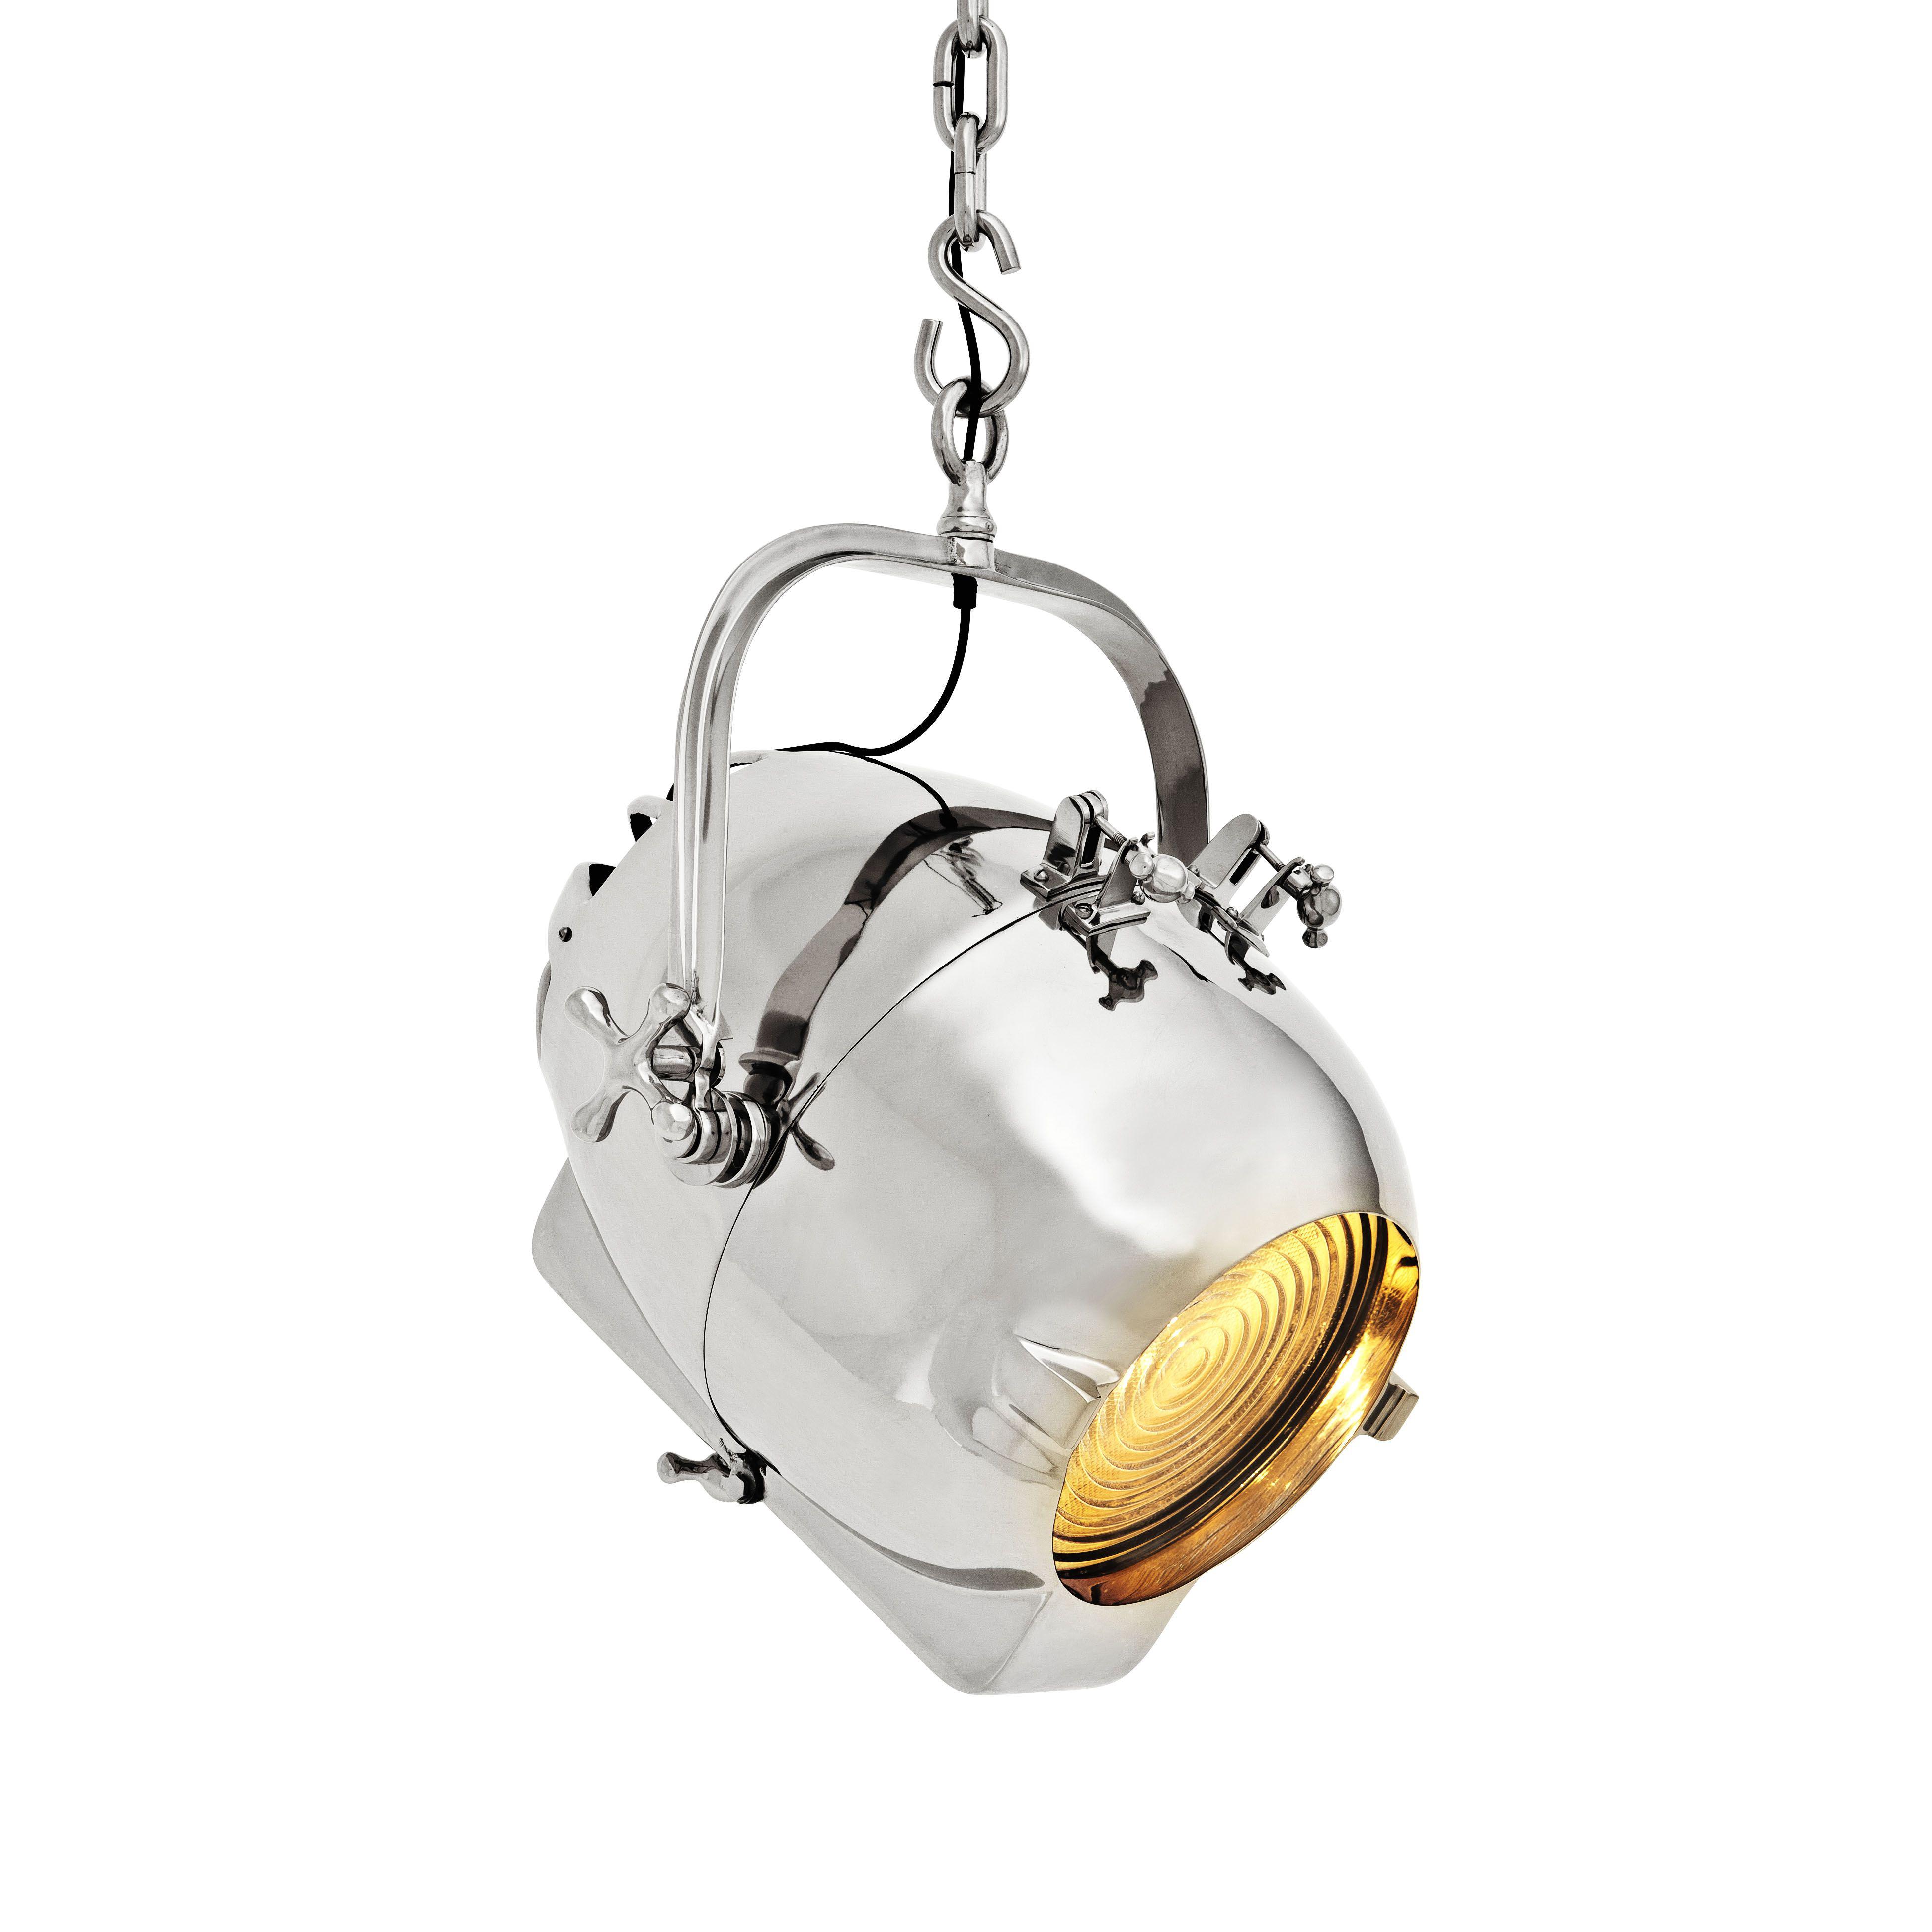 Купить Подвесной светильник Lamp Spitfire в интернет-магазине roooms.ru